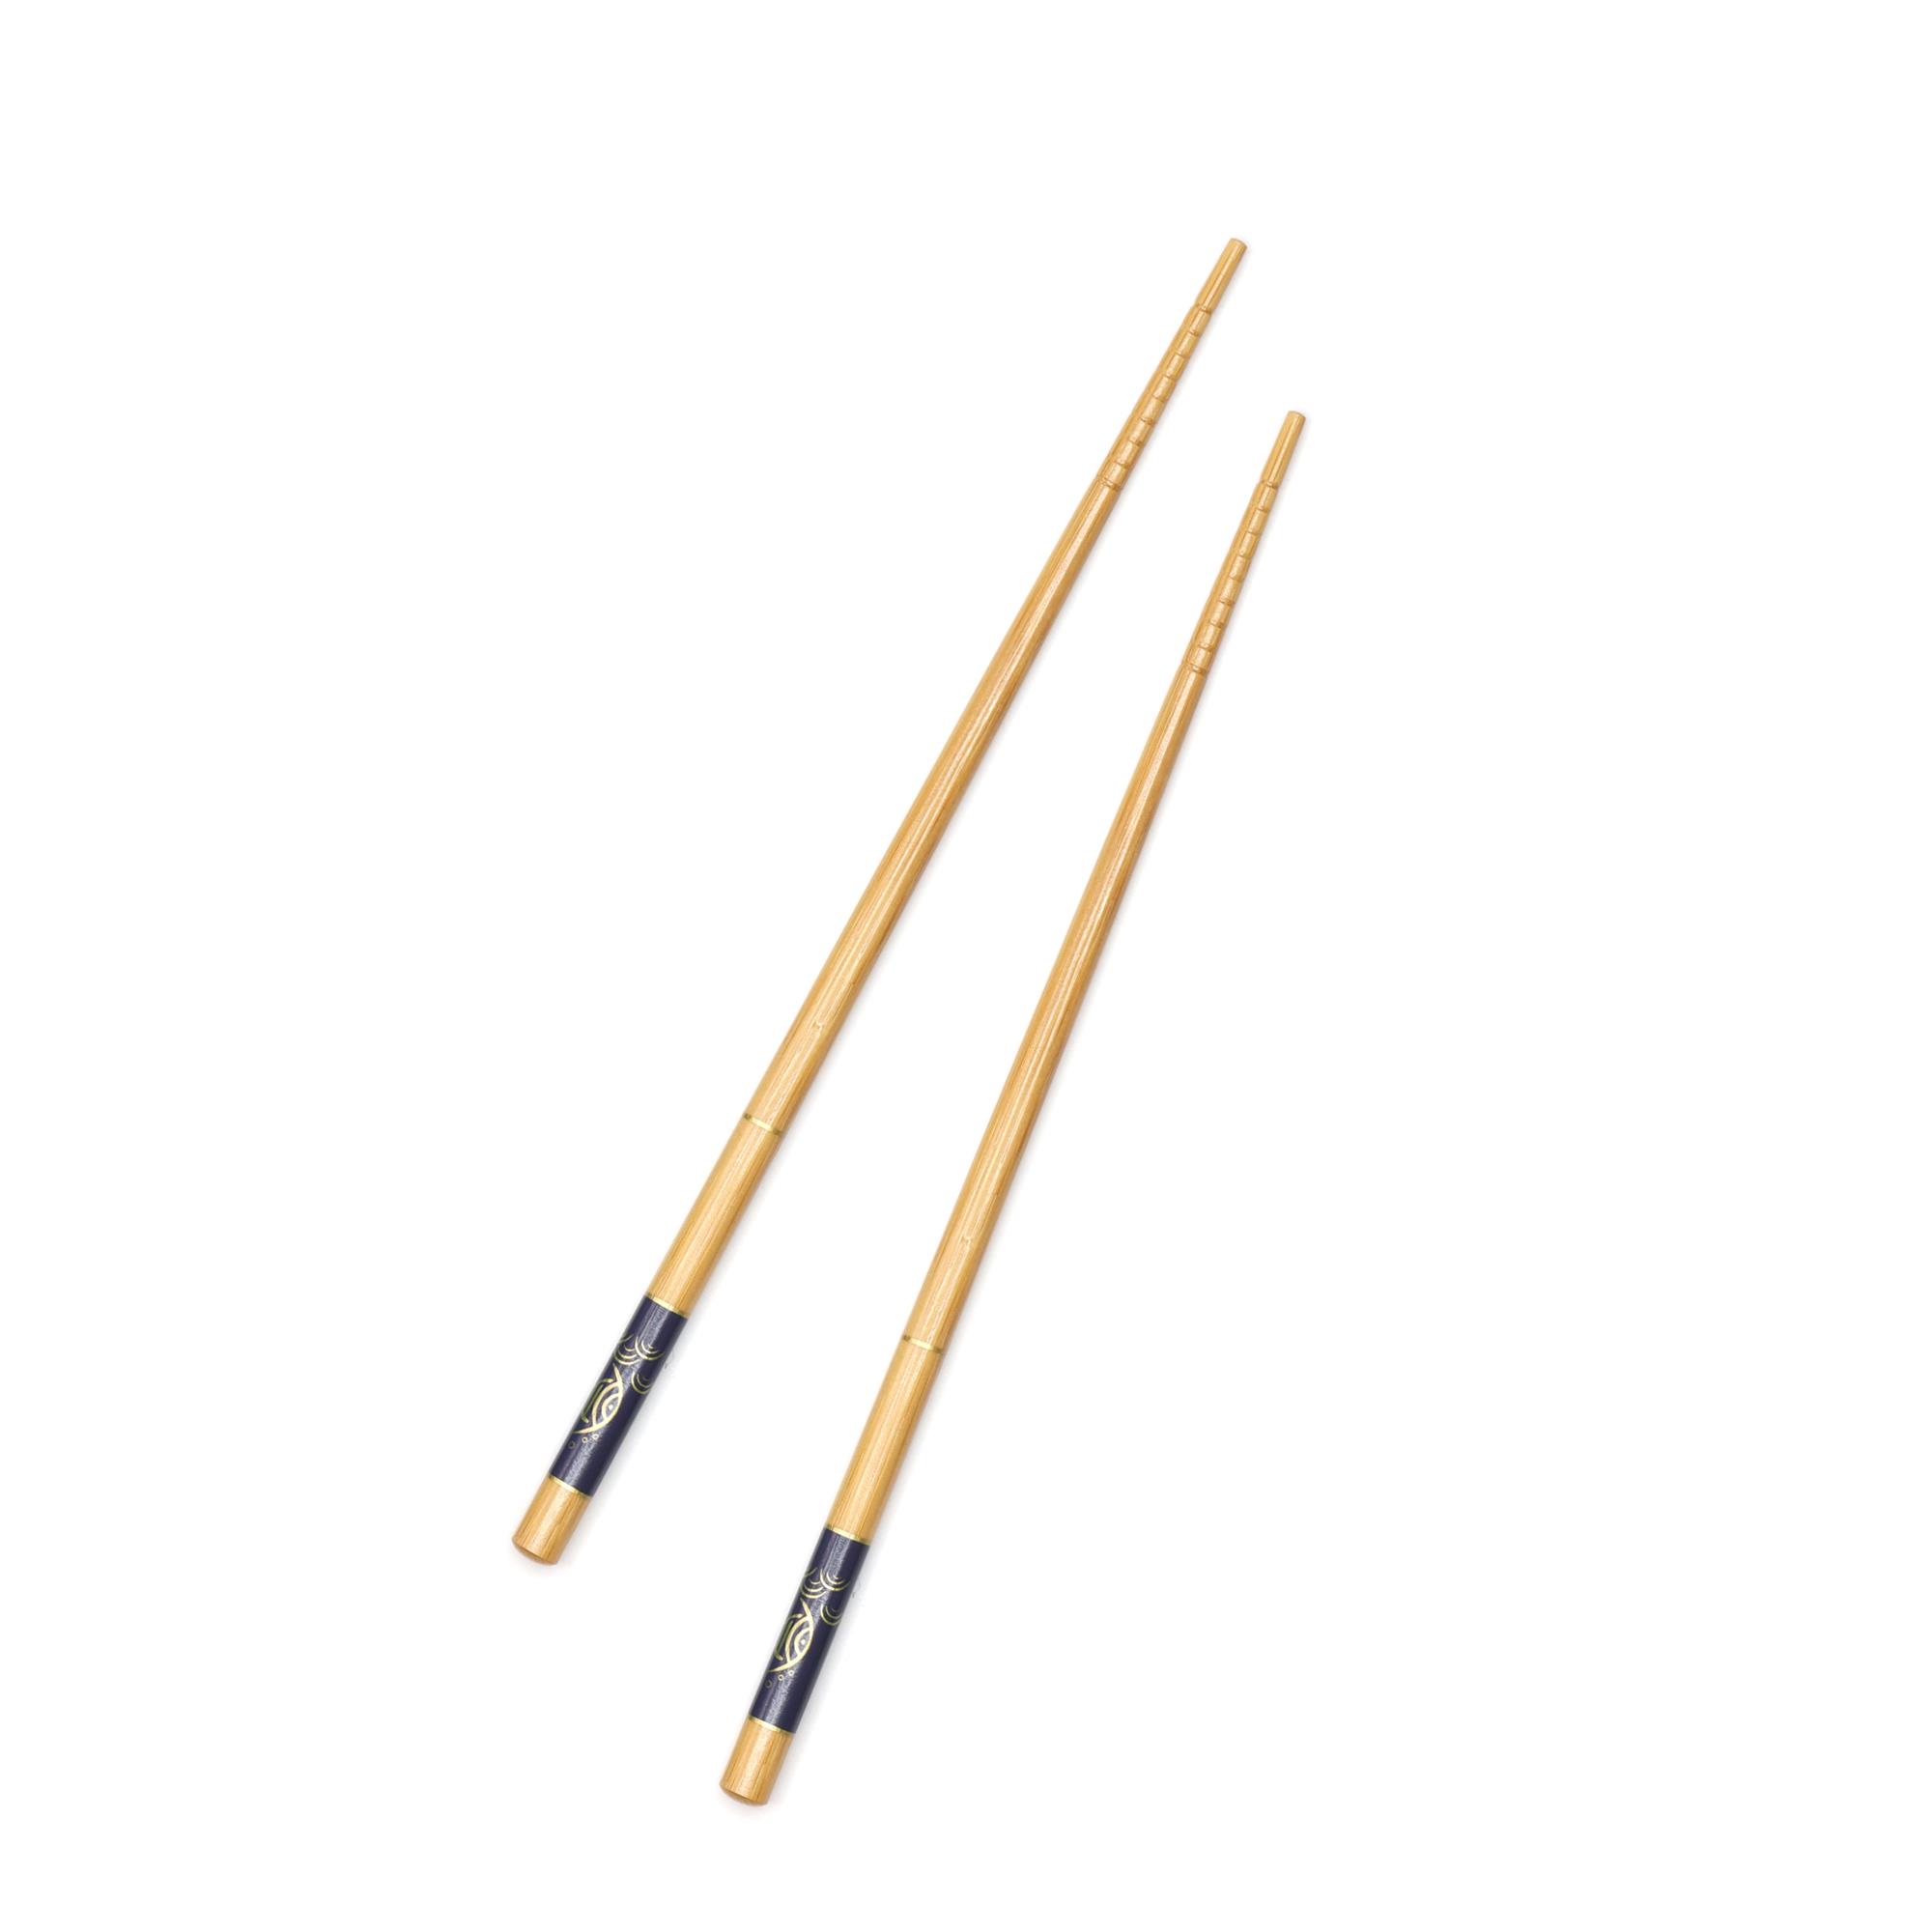 Çok Kullanımlık Bambu Çin Çubuğu (Chopsticks) Balık Desen 22,5 cm - 2 Adet